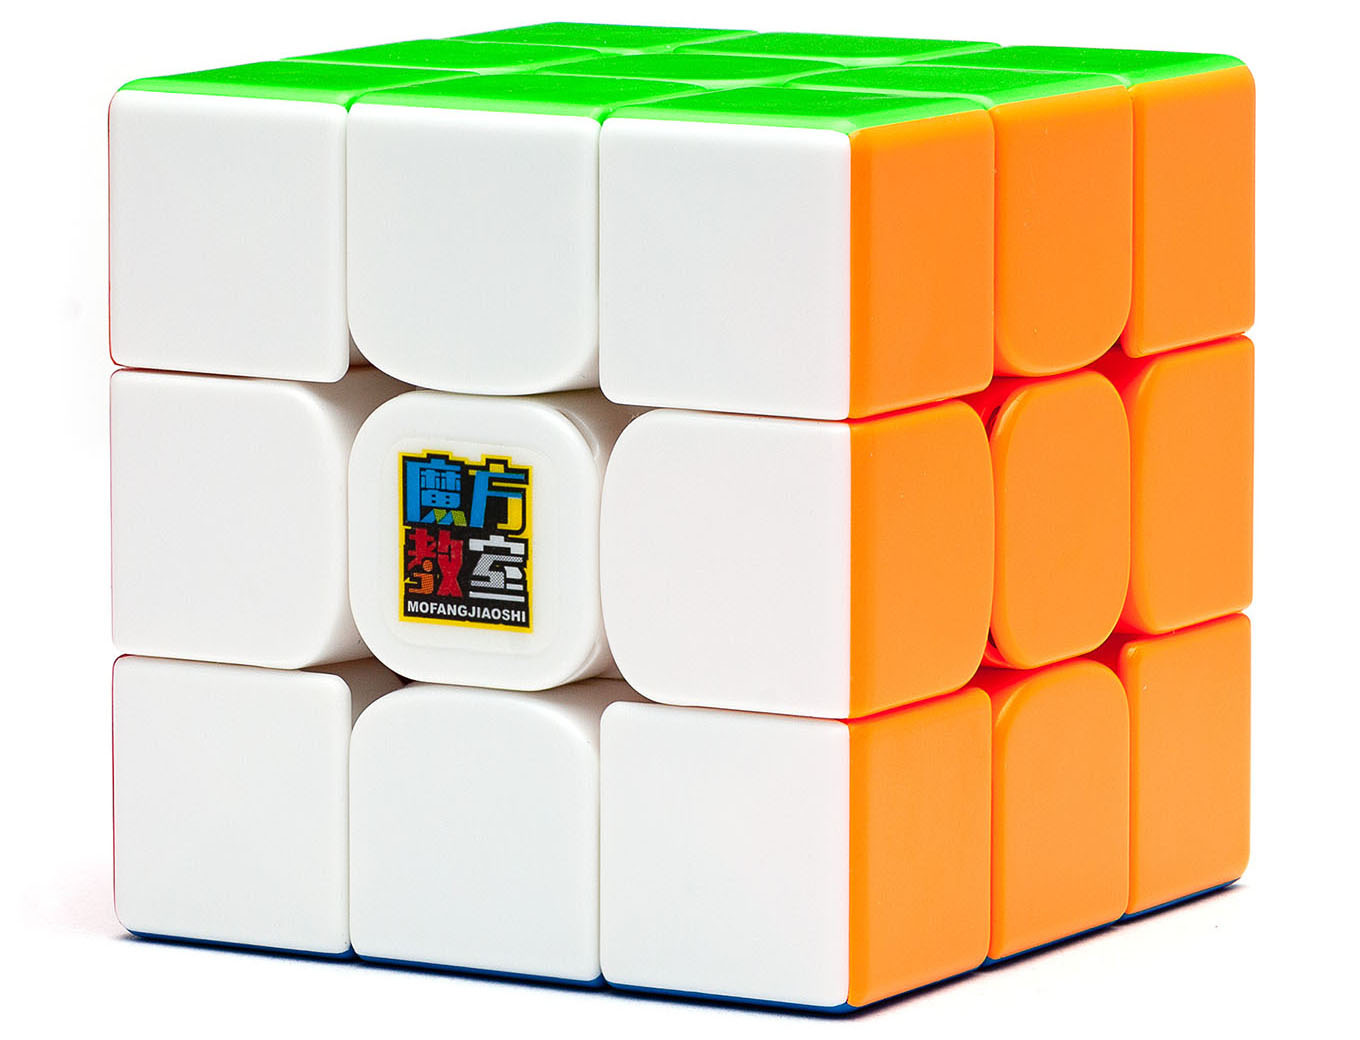 Duo cubes. Кубик Рубика MOYU Weilong GTS 2m. Головоломка MOYU 3x3x3 Weilong GTS v2. Кубик Рубика MOYU Meilong Macaron. MOYU Meilong 5x5 m.